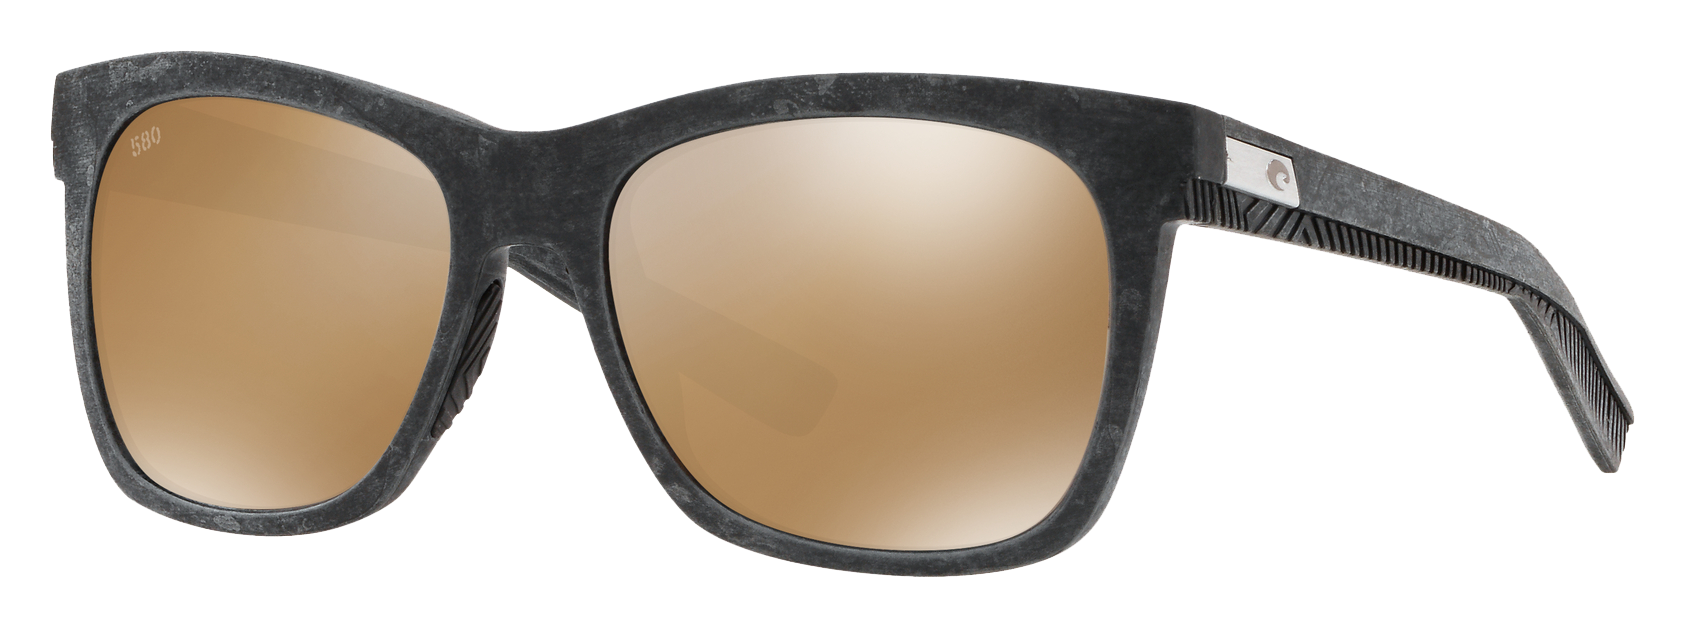 Costa Del Mar Caldera 580G Glass Polarized Sunglasses for Ladies